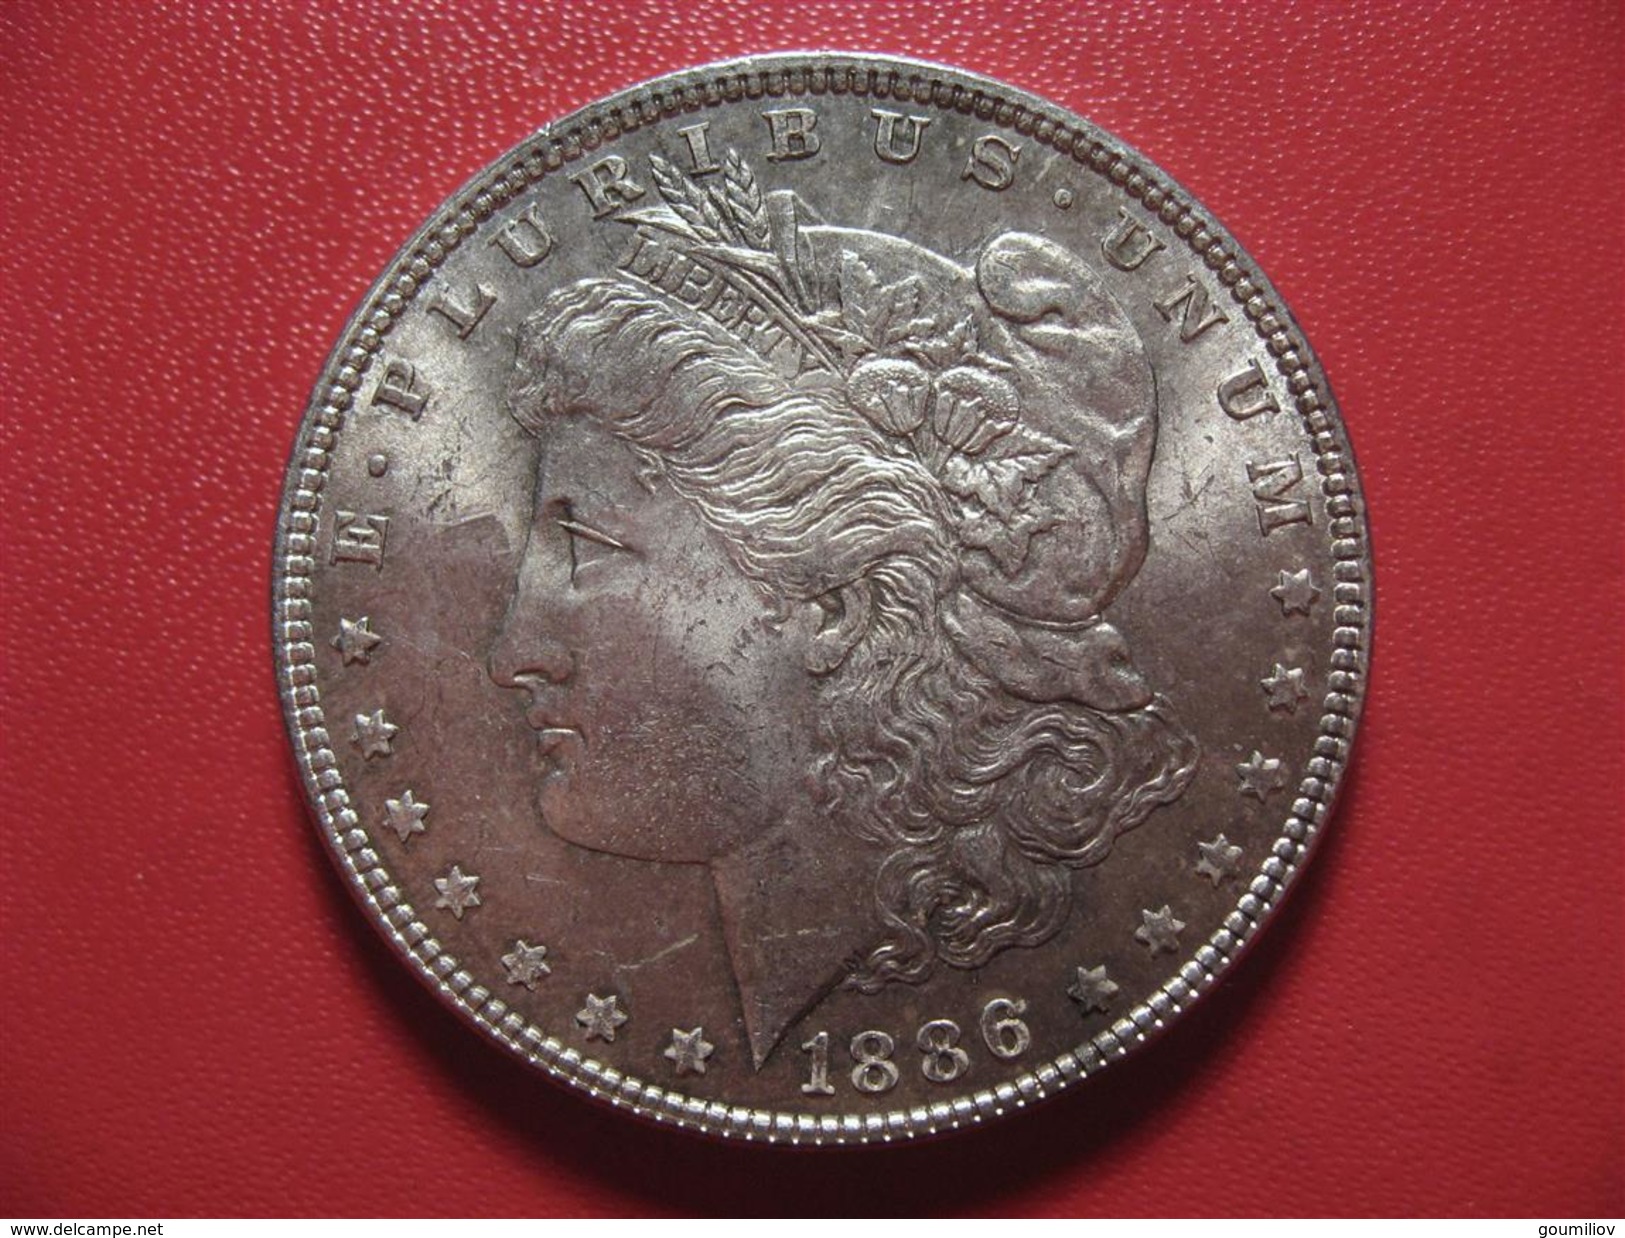 Etats-Unis - USA - One Morgan Dollar 1886 2160